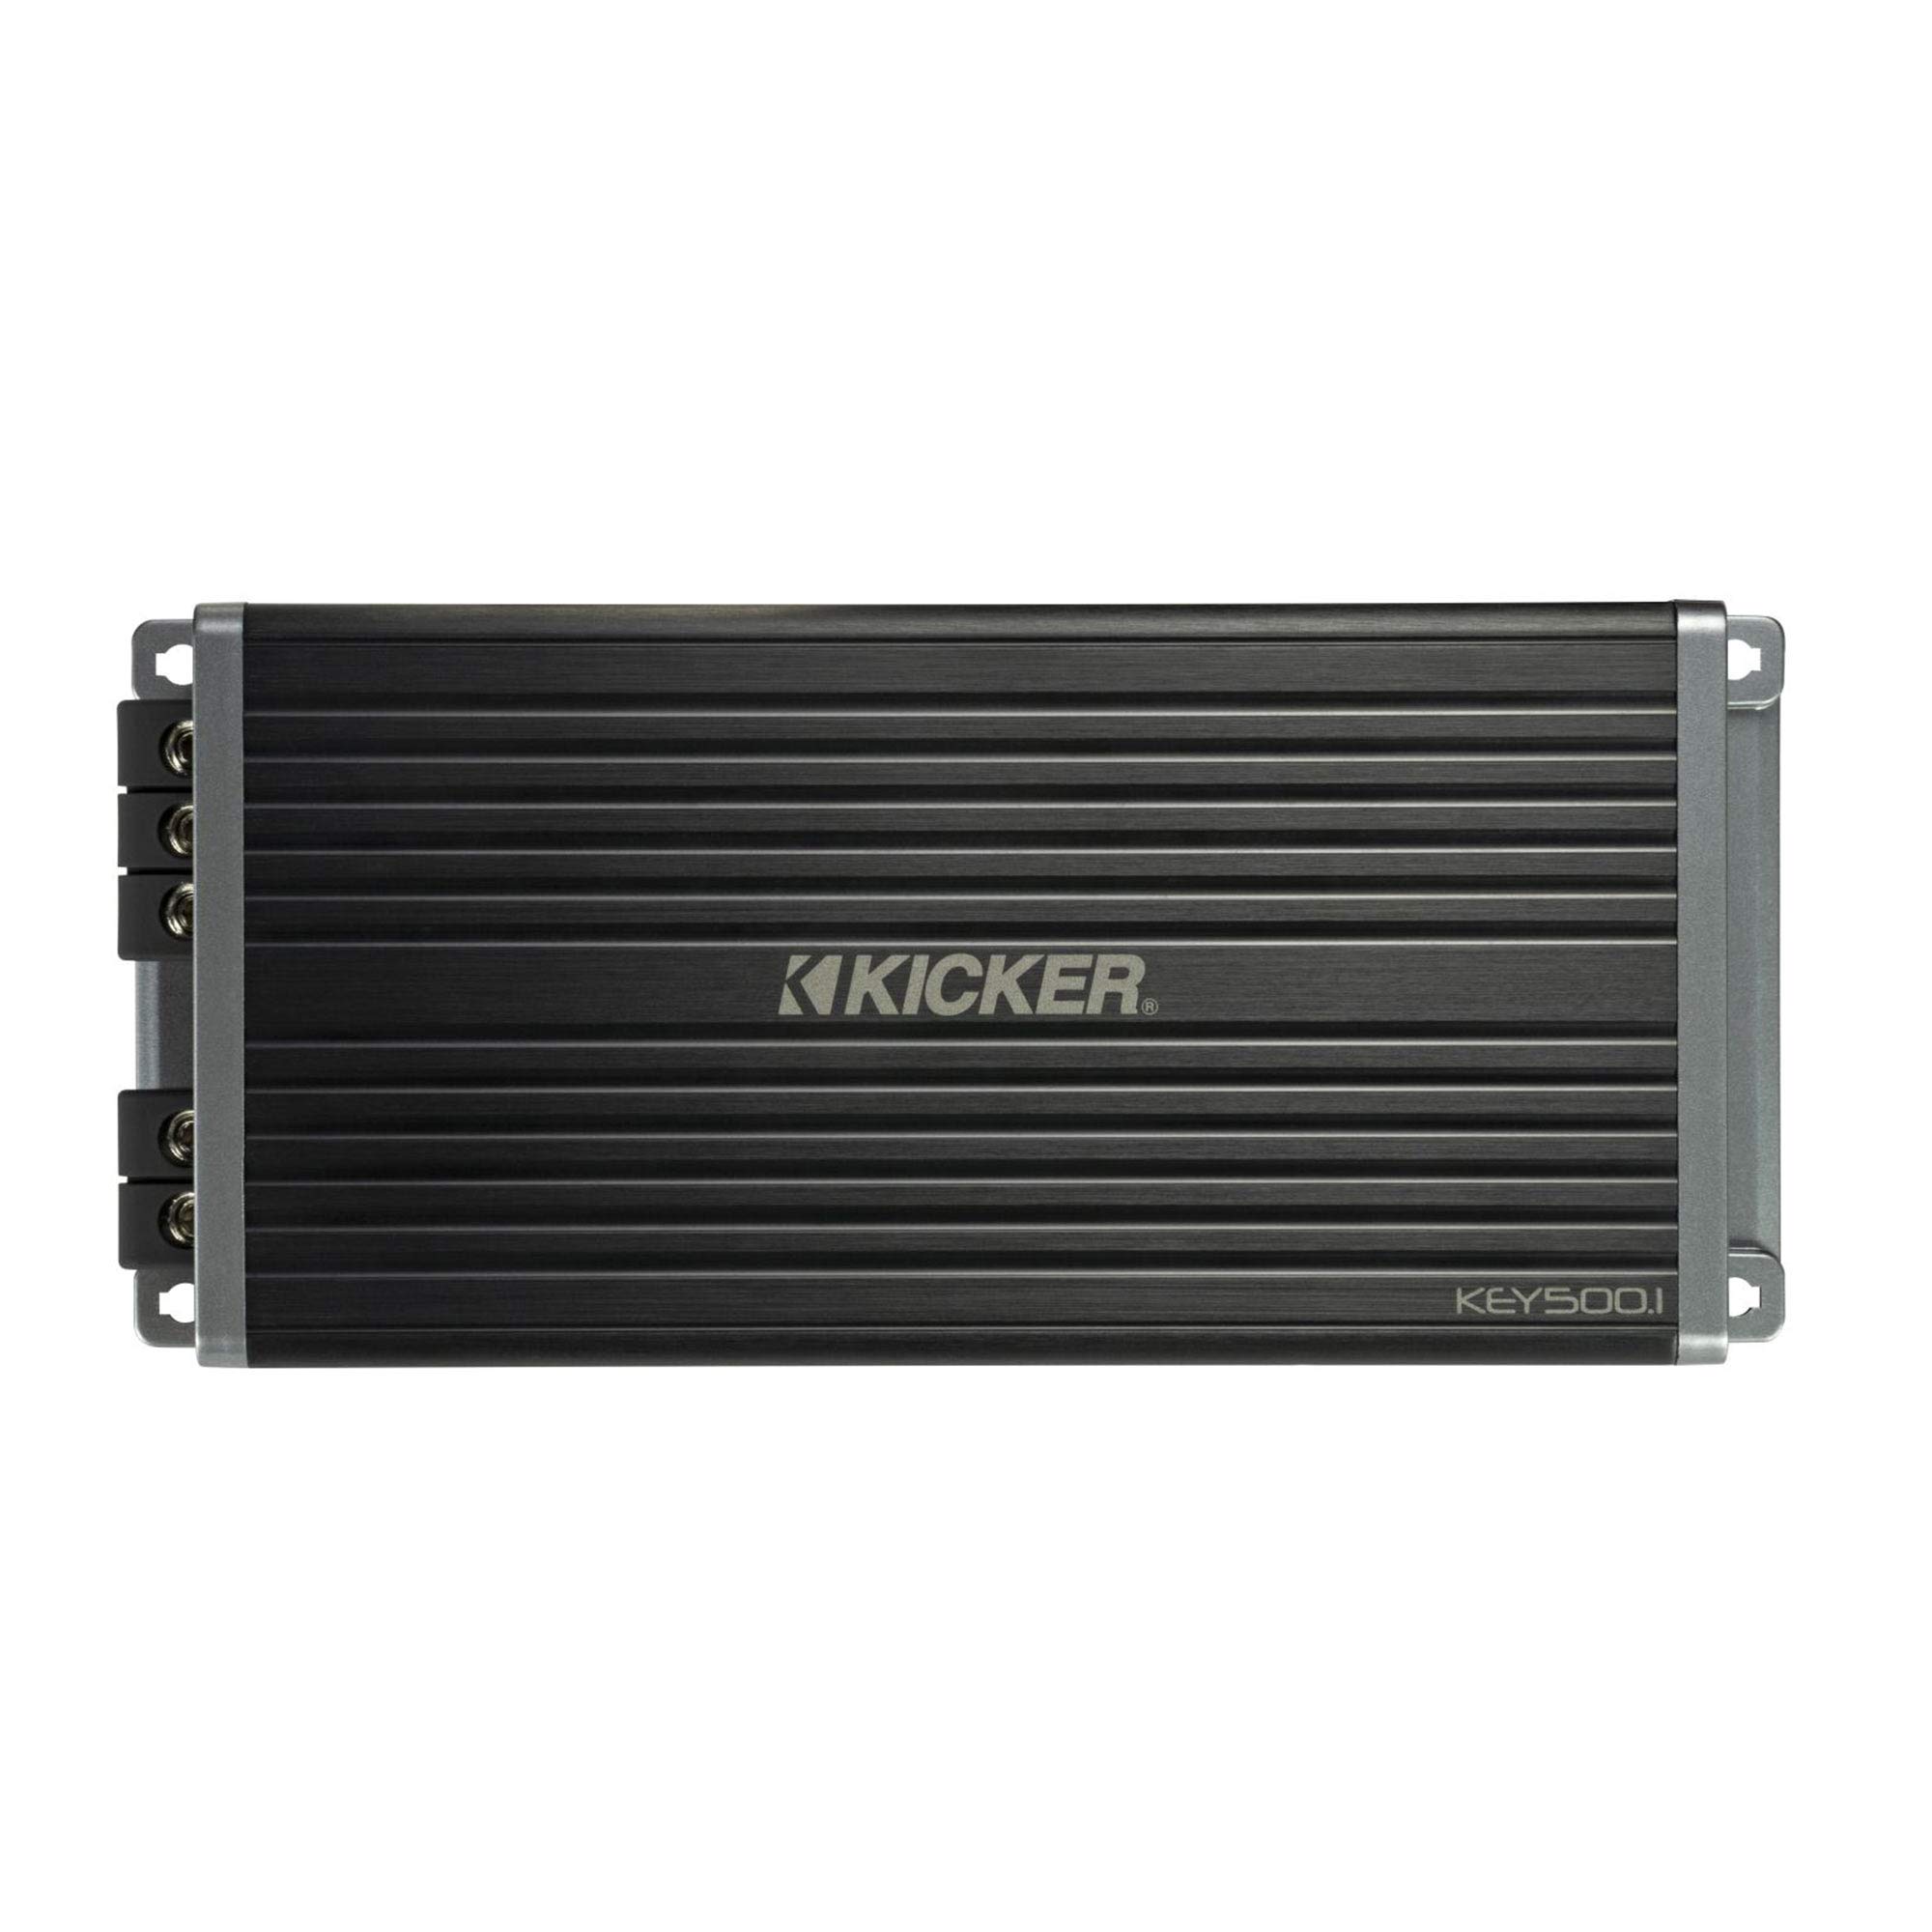 Kicker 47KEY5001 500-Watt Mono Channel Amp with Start/Stop Capability